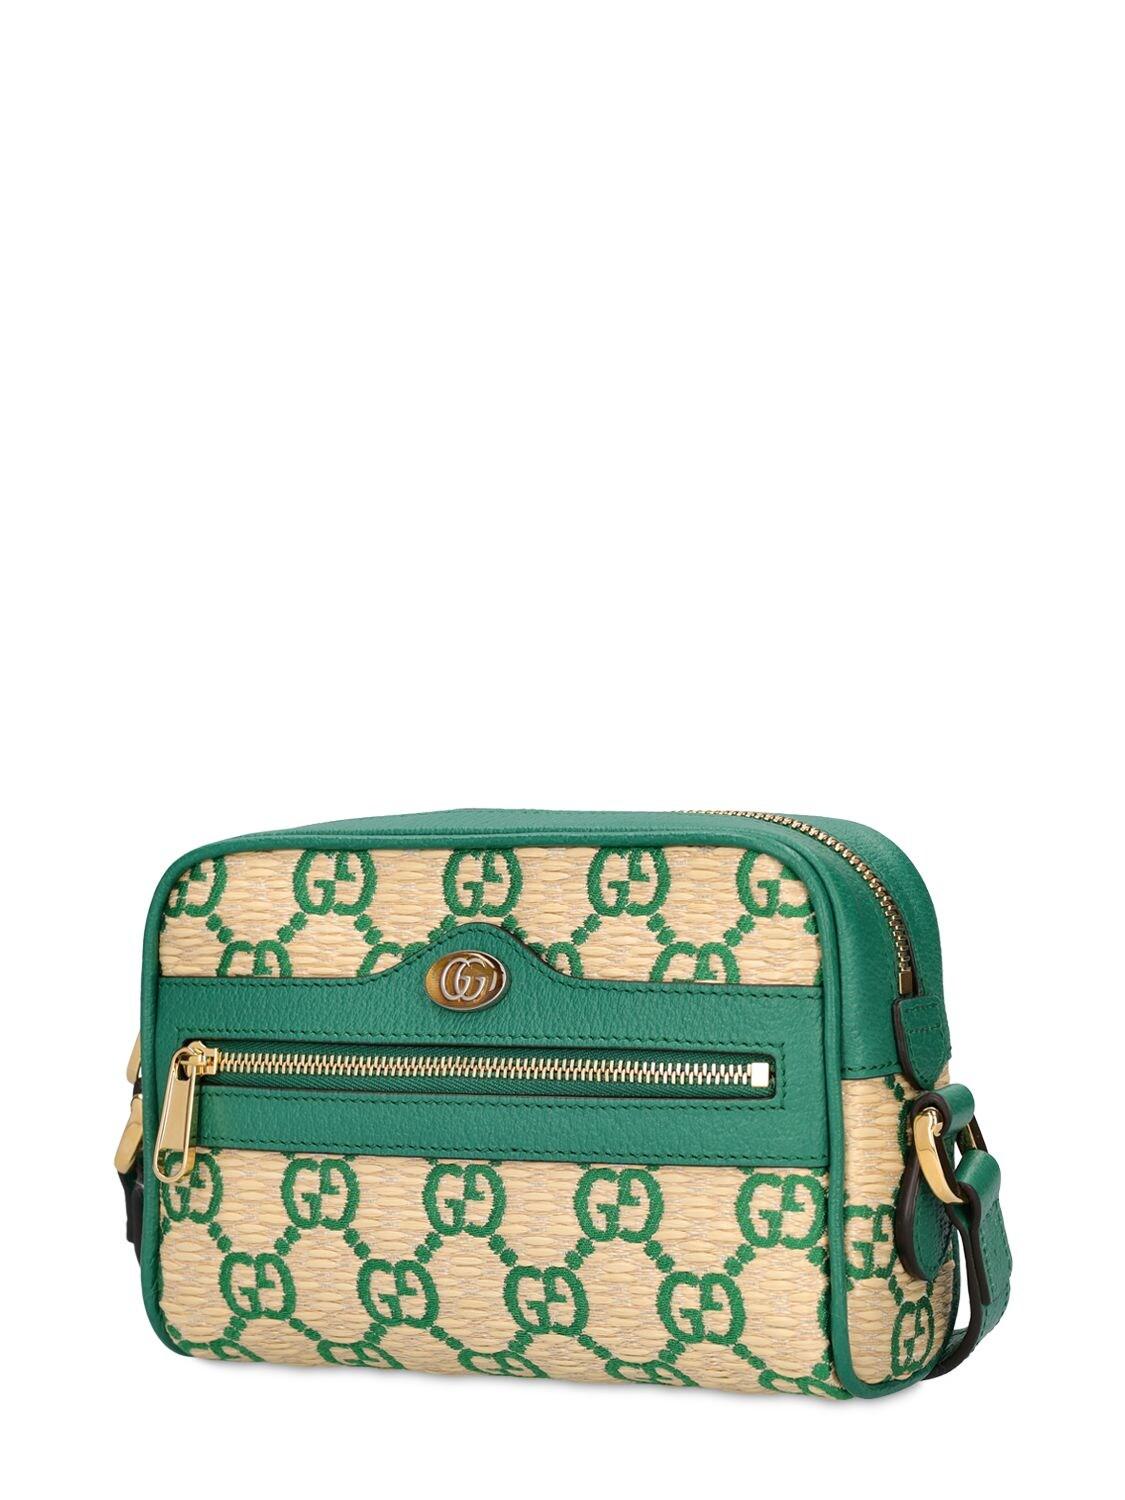 Gucci Ophidia GG Supreme Mini Bag